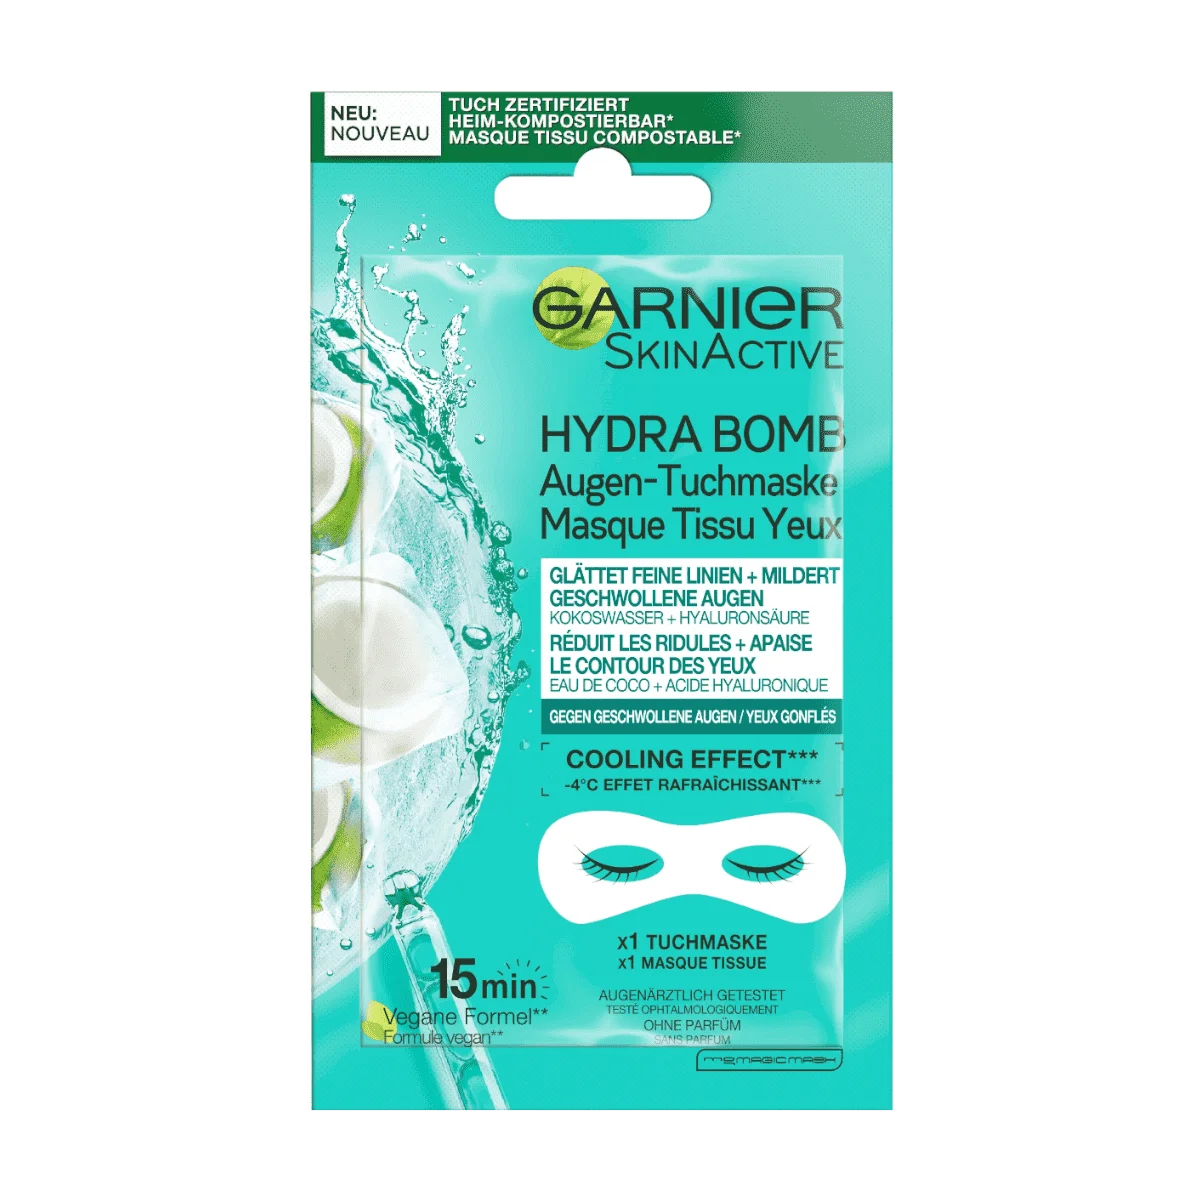 Garnier SkinActive Hydra Bomb Augen-Tuchmaske Kokoswasser & Hyaluronsäure 28g, 1 Stk